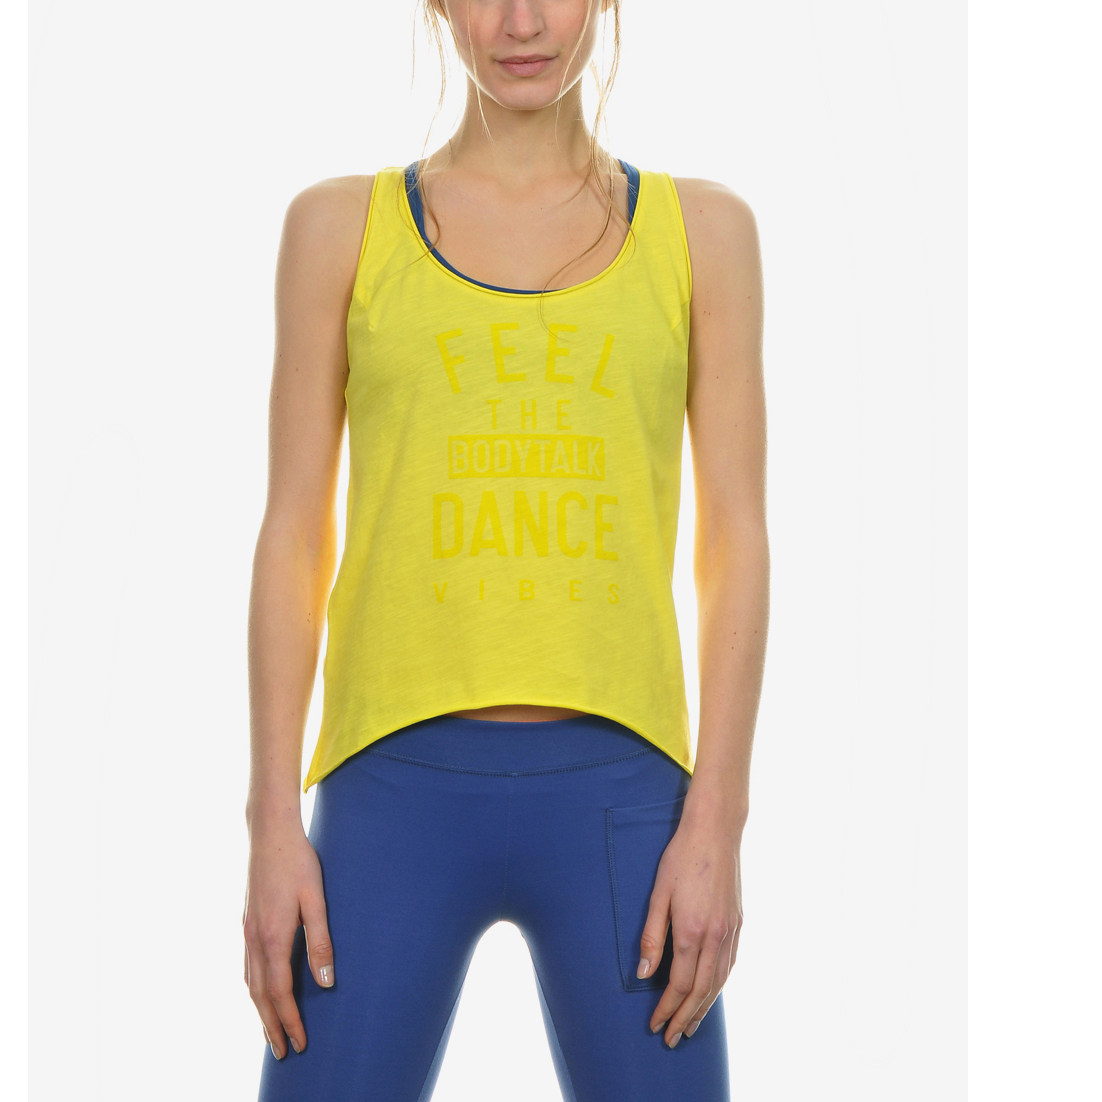 Γυναικεία/Ρούχα/Αθλητικά/T-shirt-Τοπ BODYTALK - Γυναικεία μπλούζα BODYTALK κίτρινη